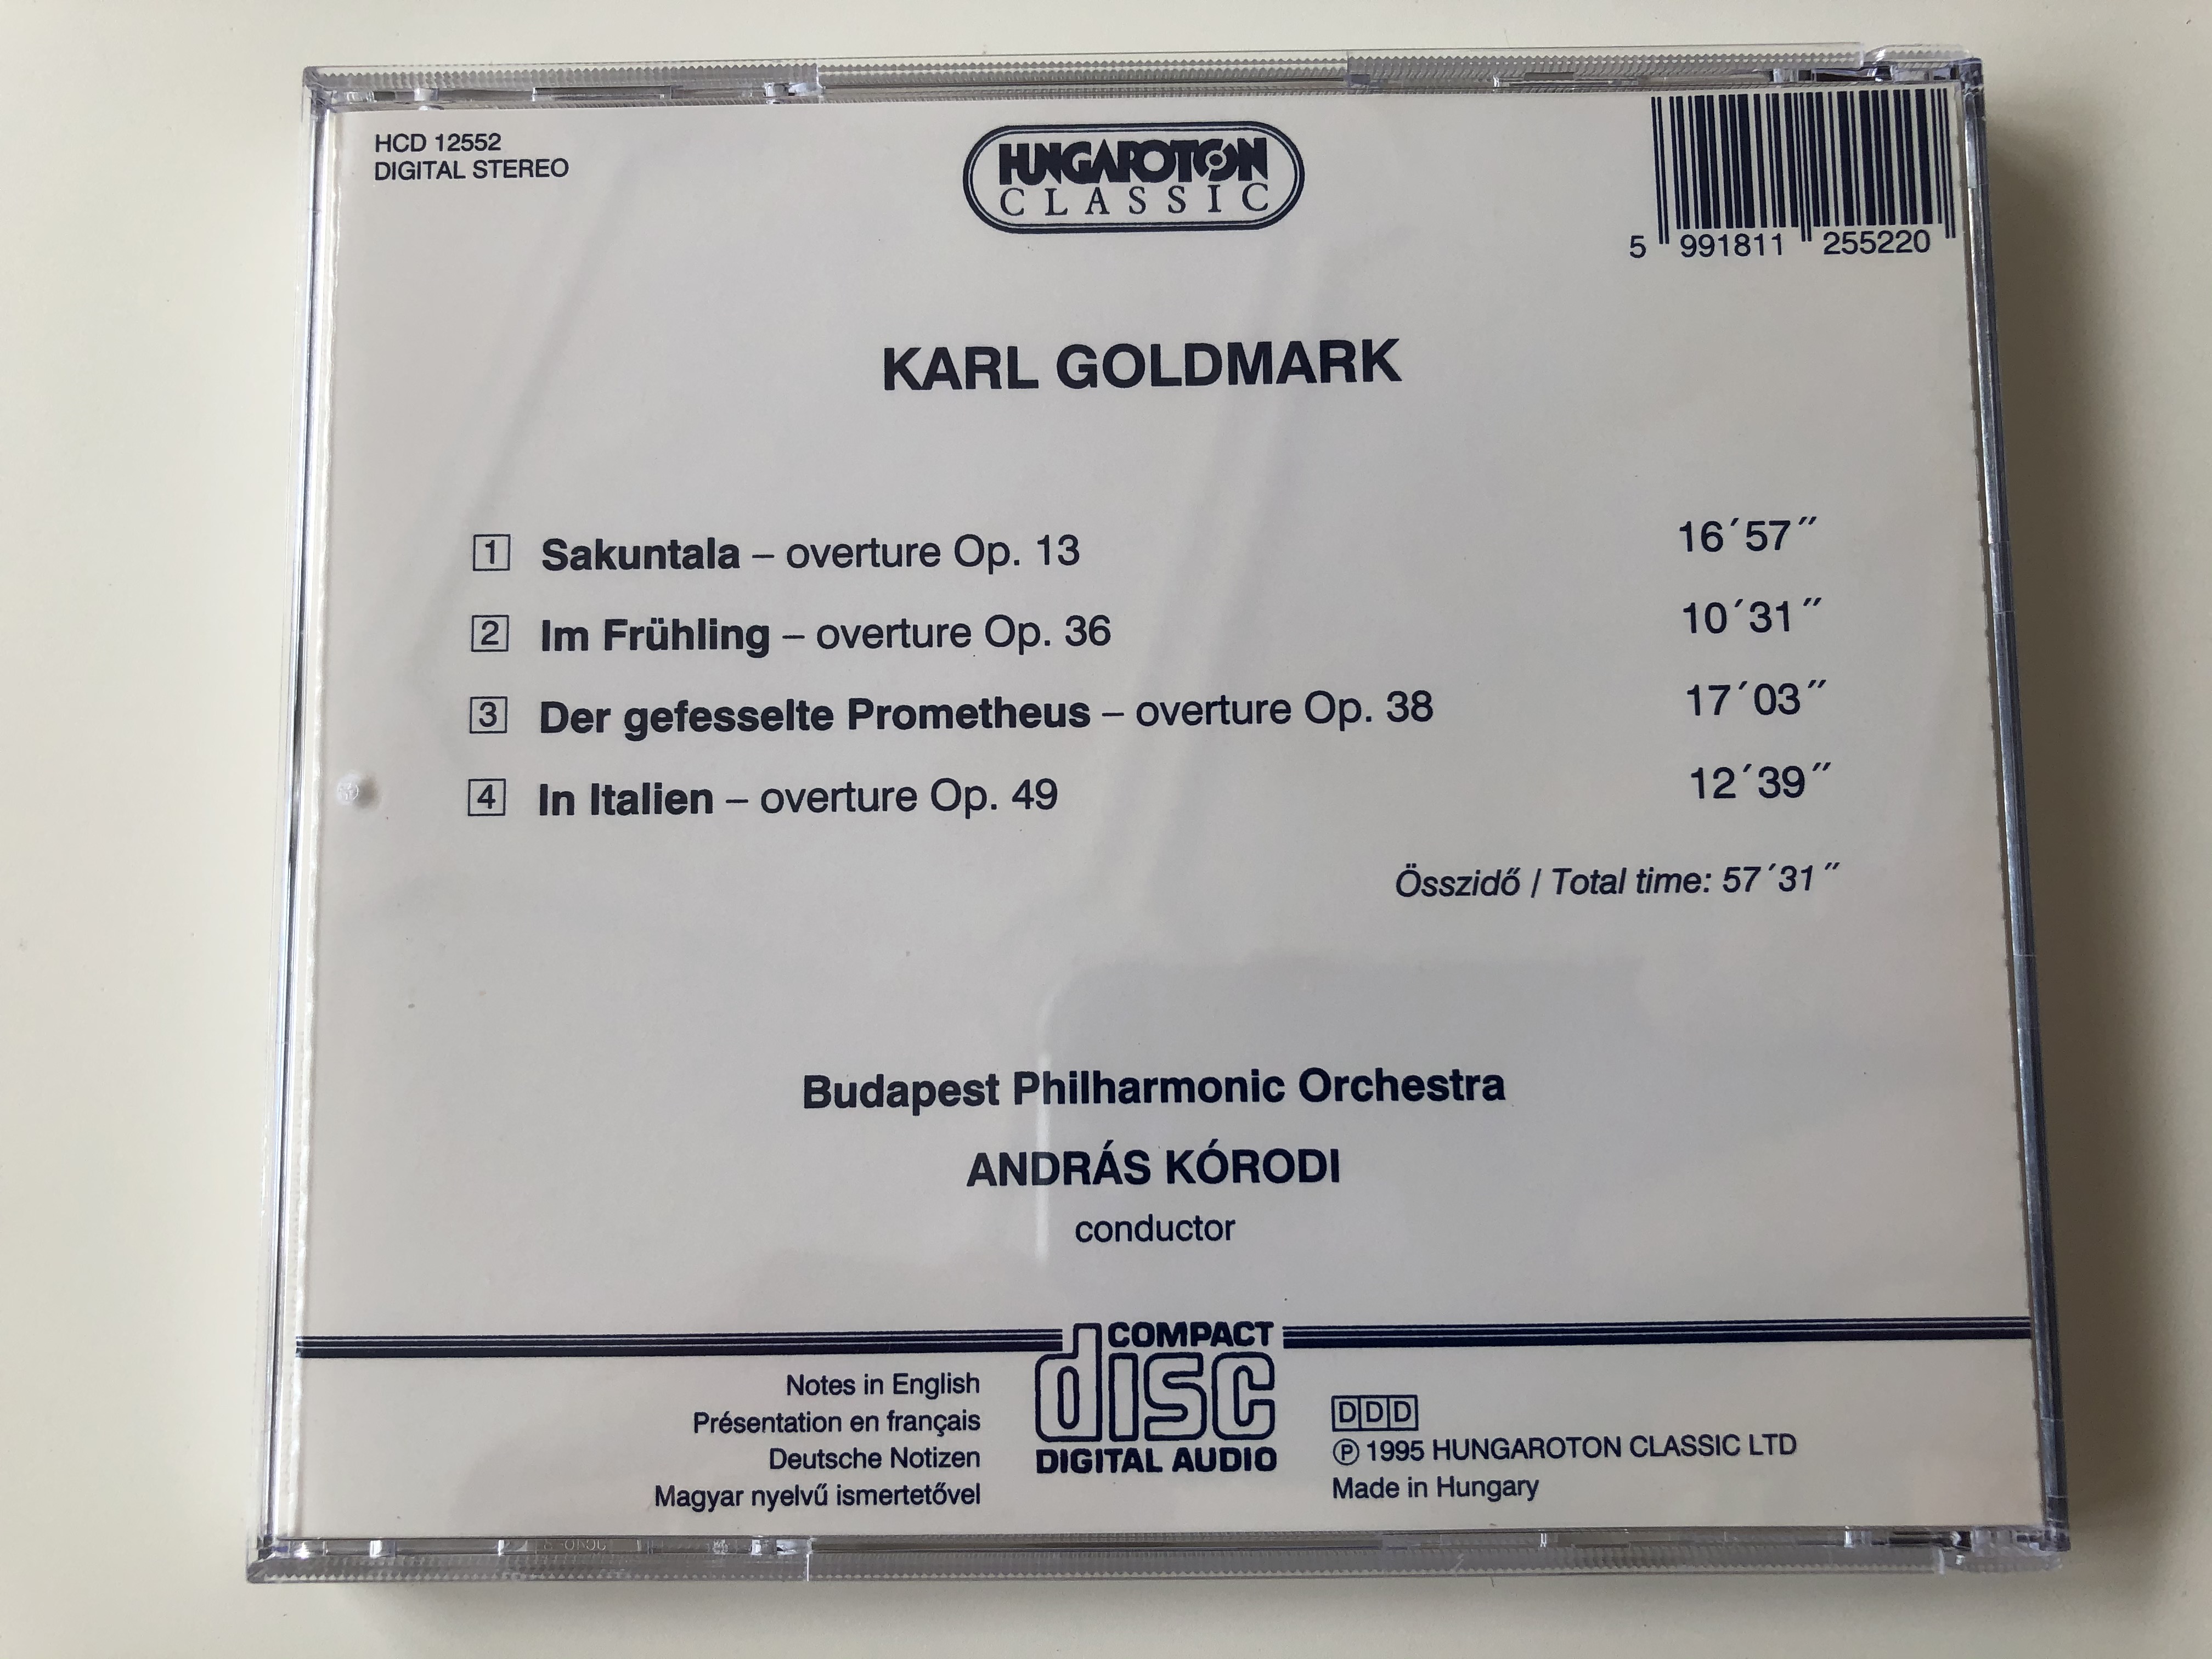 karl-goldmark-overtures-sakuntala-im-fr-hling-prometheus-in-italien-budapest-philharmonic-orchestra-andr-s-k-rodi-hungaroton-classic-audio-cd-1995-stereo-hcd-12552-7-.jpg